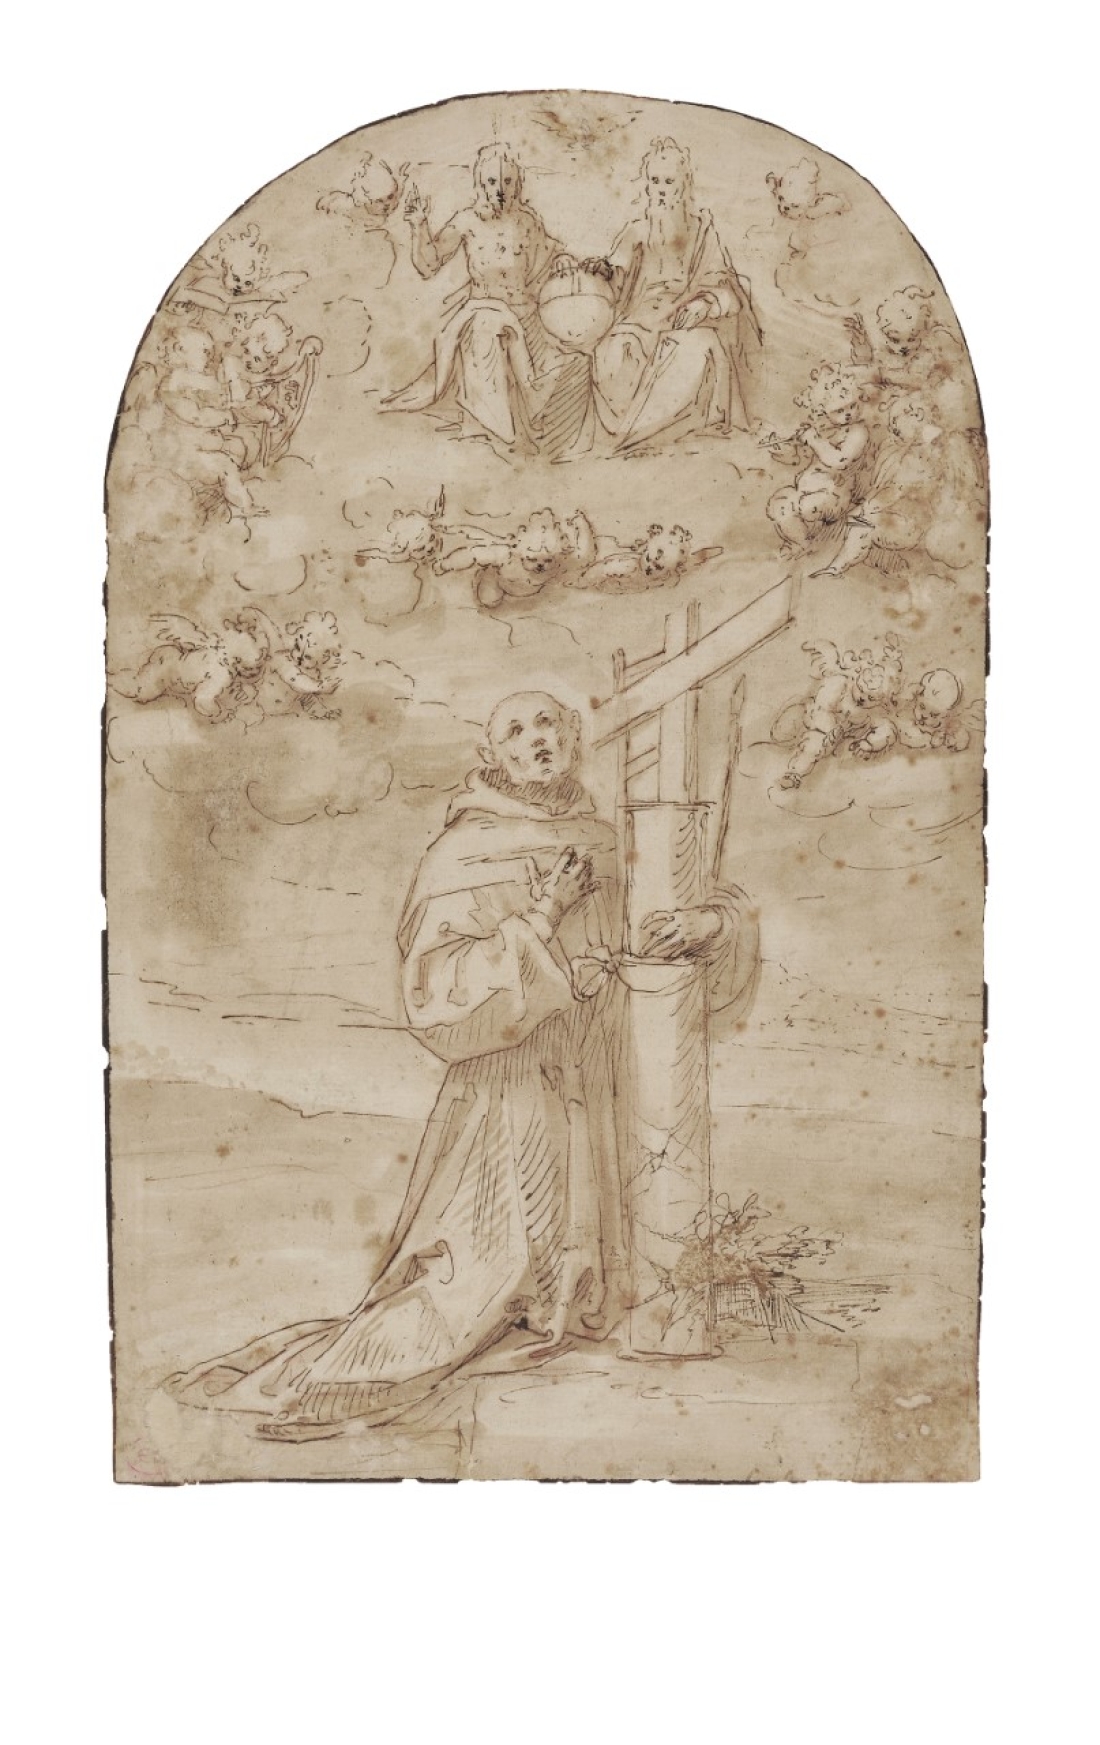 Γκουλιέλμο Κάτσια (Μονκάλβο) «Ο άγιος Diego de Alcala σε έκσταση με την Αγία Τριάδα και σύμβολα του πάθους», σχέδιο σε χαρτί. Από τον κατάλογο της έκθεσης «Στα άδυτα της Εθνικής Πινακοθήκης. Άγνωστοι θησαυροί από τις συλλογές της», 20/10/2011-8/1/2012.